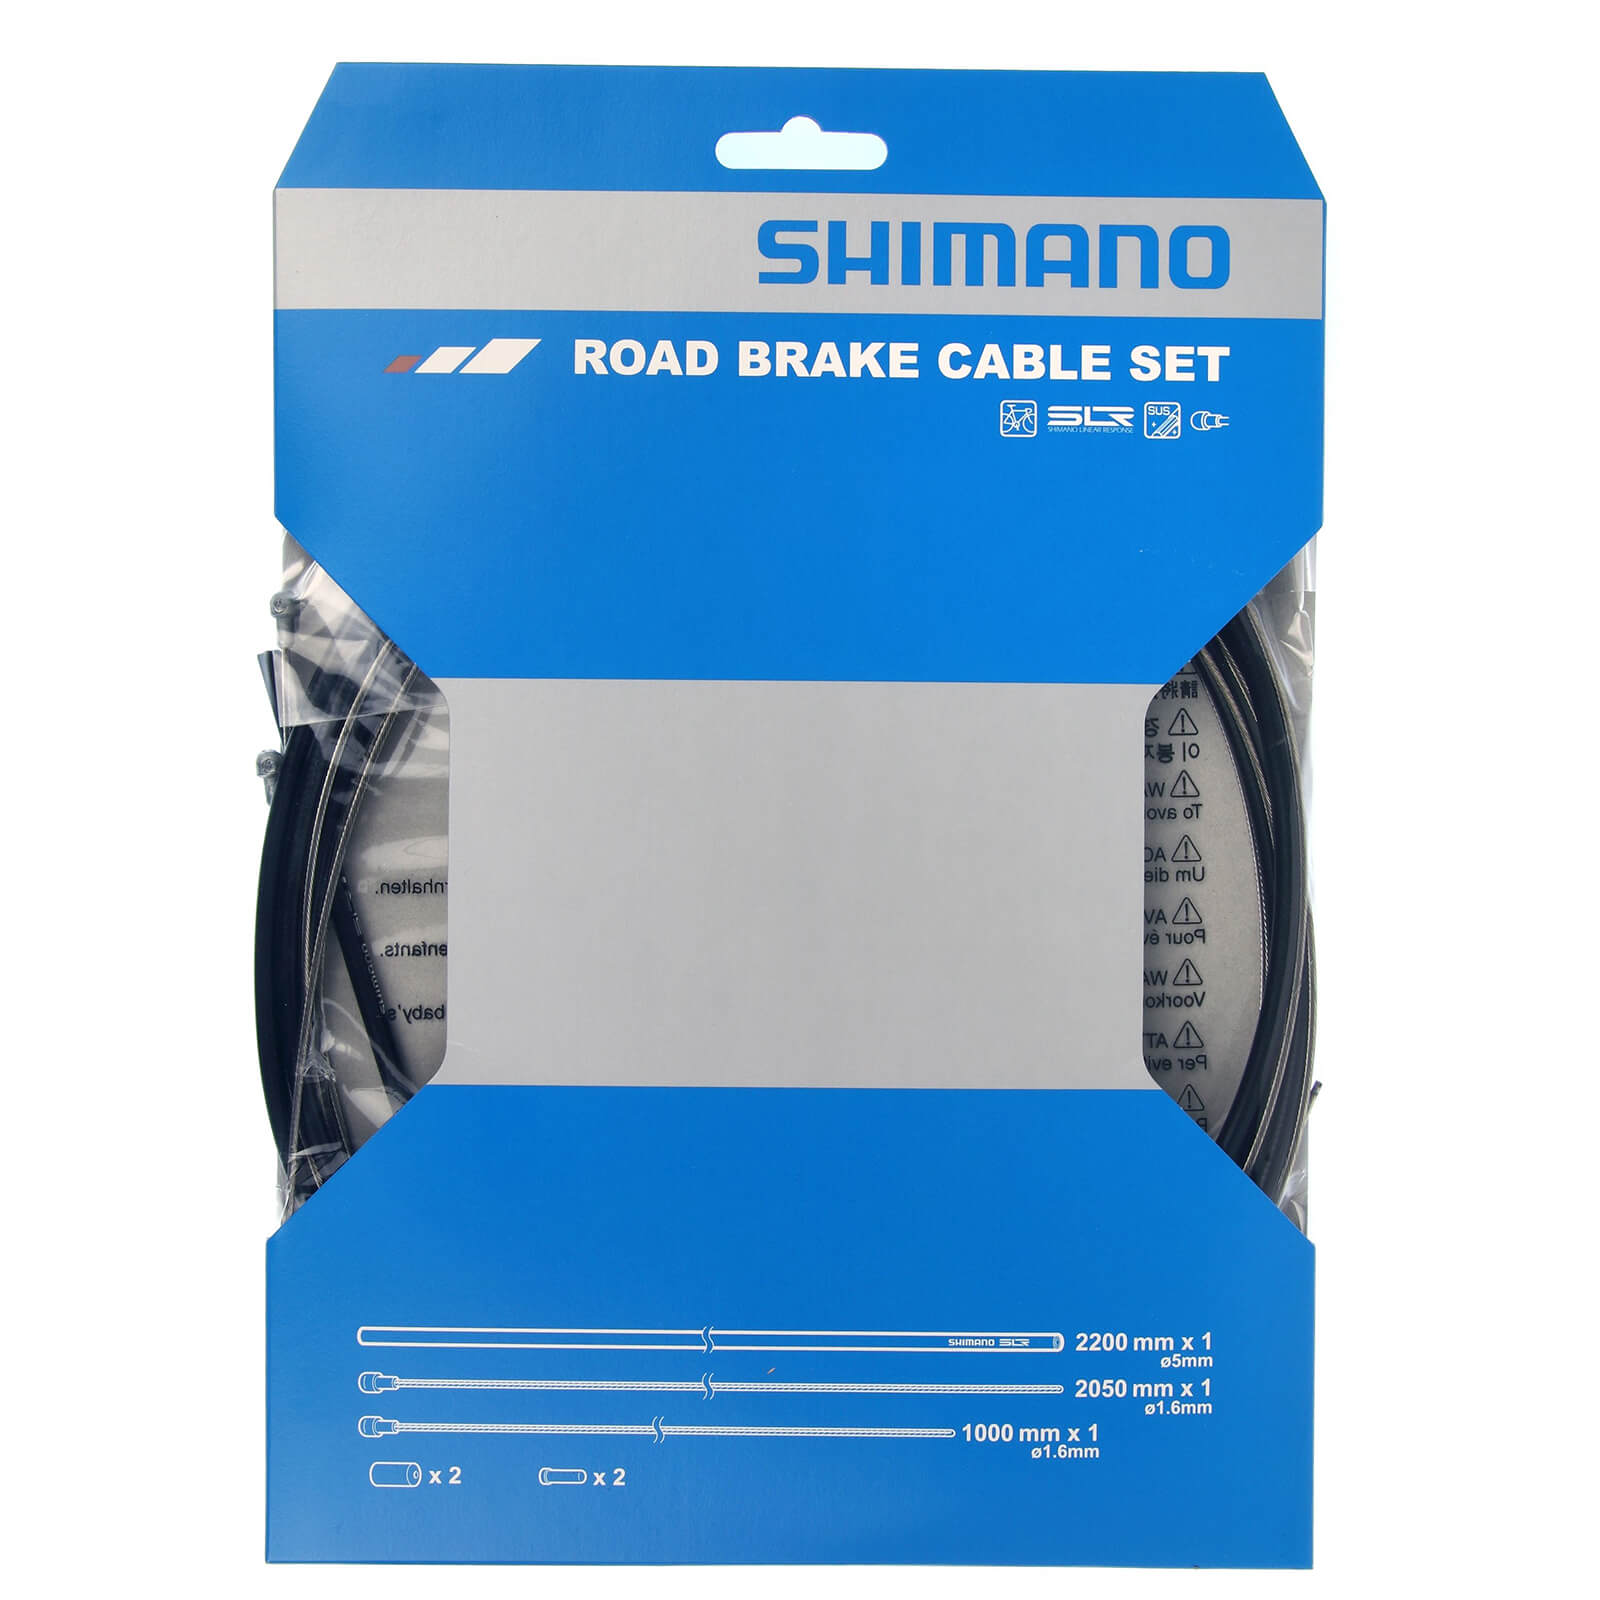 Shimano Rennrad Bremskabel Satz mit Stainless Stahl Inneren - Schwarz